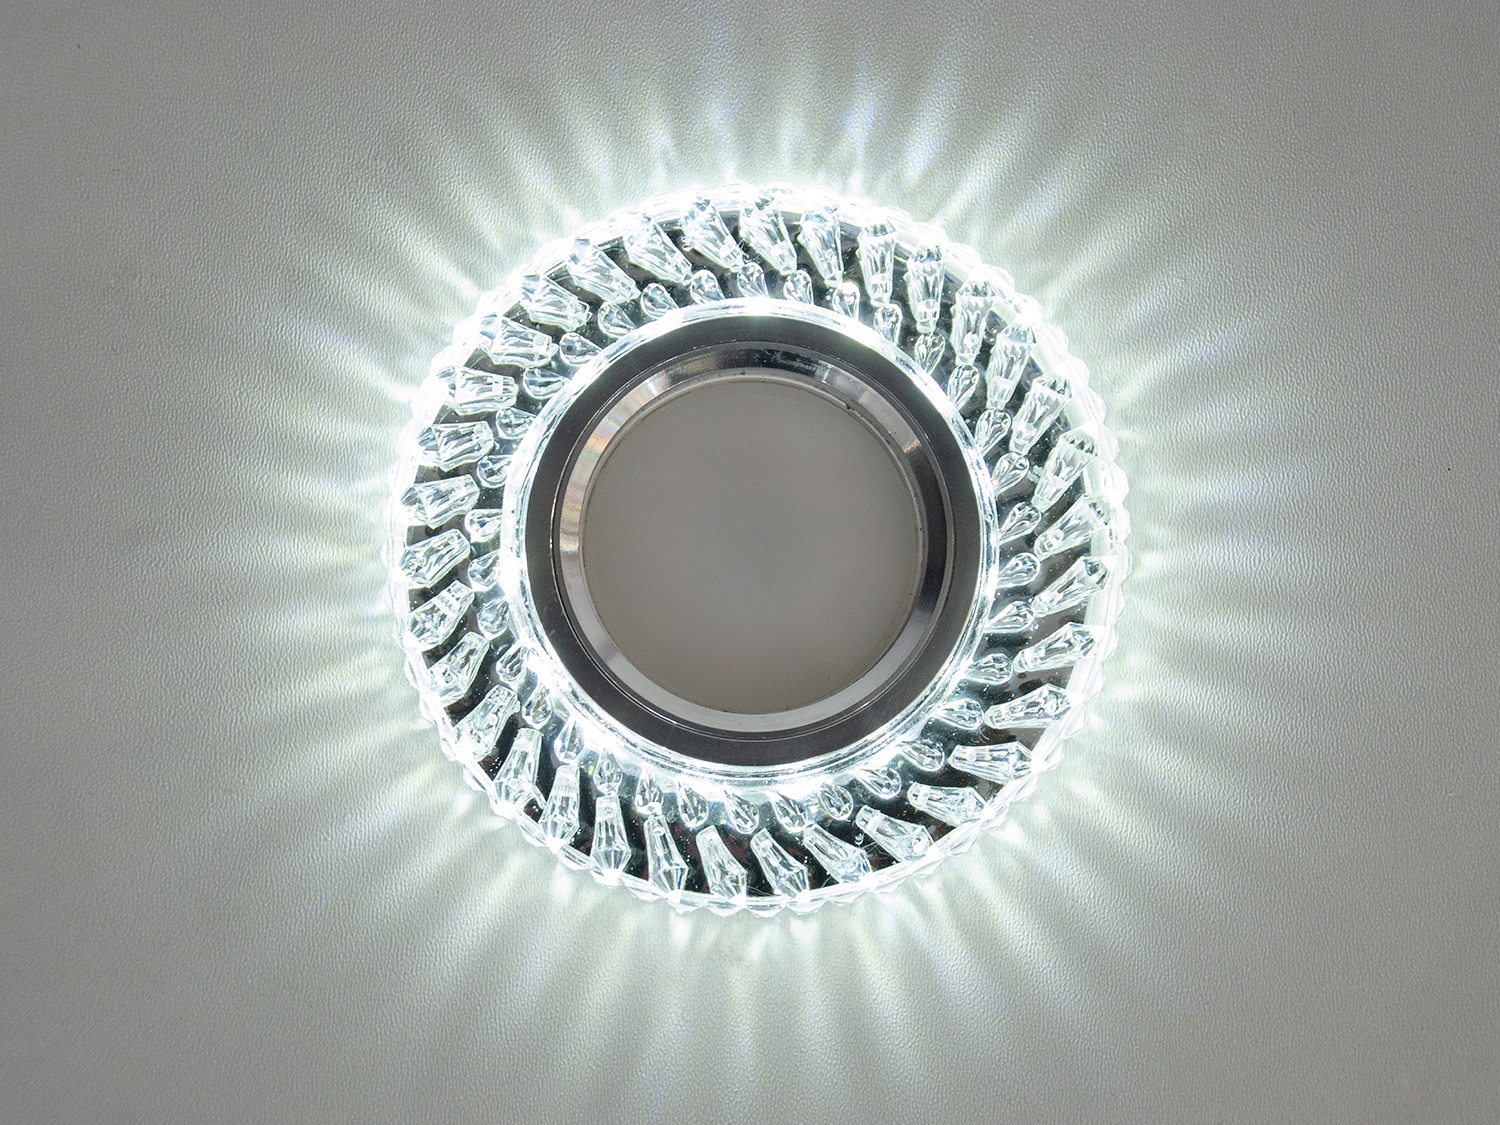 Зазвичай точкові світильники призначаються для підвісних стель і підсвічування різних ніш або робочої поверхні. Конструктивно точковий світильник складається з двох частин: видимої – декоративної та вбудованої – функціональної. Функціональна частина світильників складається з каркаса, куди вставляється джерело світла та кріпиться декоративна частина, а також затискачі, які призначені для кріплення світильника до стелі. Різноманітність декоративної частини точкових світильників із акрилової смоли дозволяє зробити Ваш інтер'єр неповторним. Головні риси сучасних точкових світильників – це рівномірне освітлення всього приміщення з можливістю акцентування необхідних деталей інтер'єру. 
   Точкові світильники, виготовлені з оптичної смоли, найкраще рішення для натяжних стель. Легкий корпус з акрилової смоли з оптичними характеристиками, близькими до кришталю. Стійкий до механічних пошкоджень. Великий вибір моделей та кольорів світильників.
У світильник вбудовано підсвічування потужністю 3Вт (колірна температура 4100K – нейтральний білий).

Лампа MR-16 та трансформатор у комплект не входять.